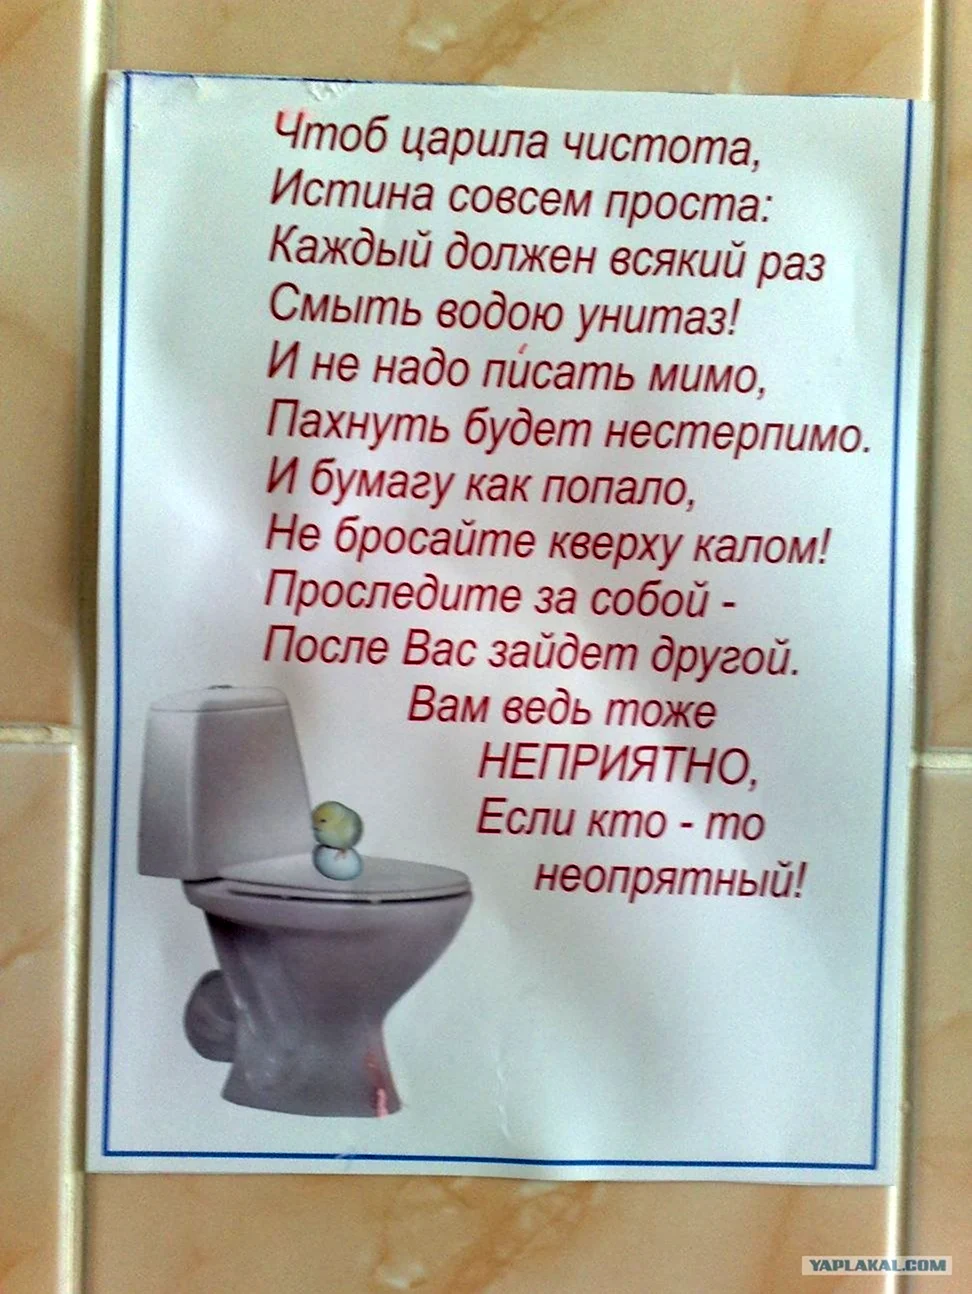 Объявление о чистоте в туалете. Картинка